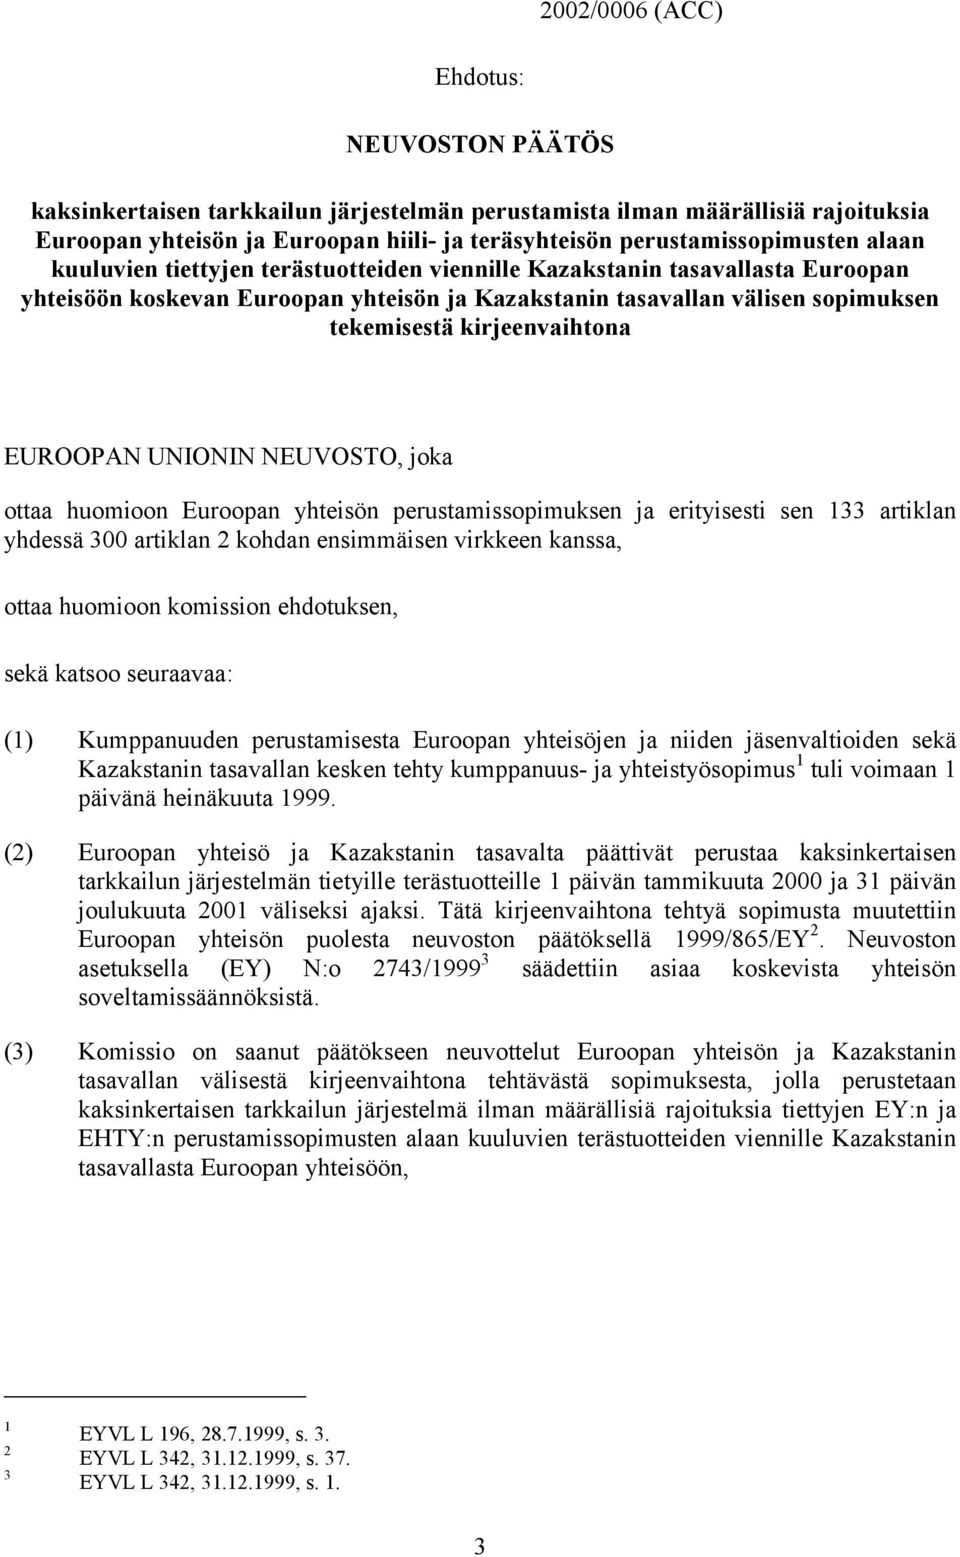 EUROOPAN UNIONIN NEUVOSTO, joka ottaa huomioon Euroopan yhteisön perustamissopimuksen ja erityisesti sen 133 artiklan yhdessä 300 artiklan 2 kohdan ensimmäisen virkkeen kanssa, ottaa huomioon